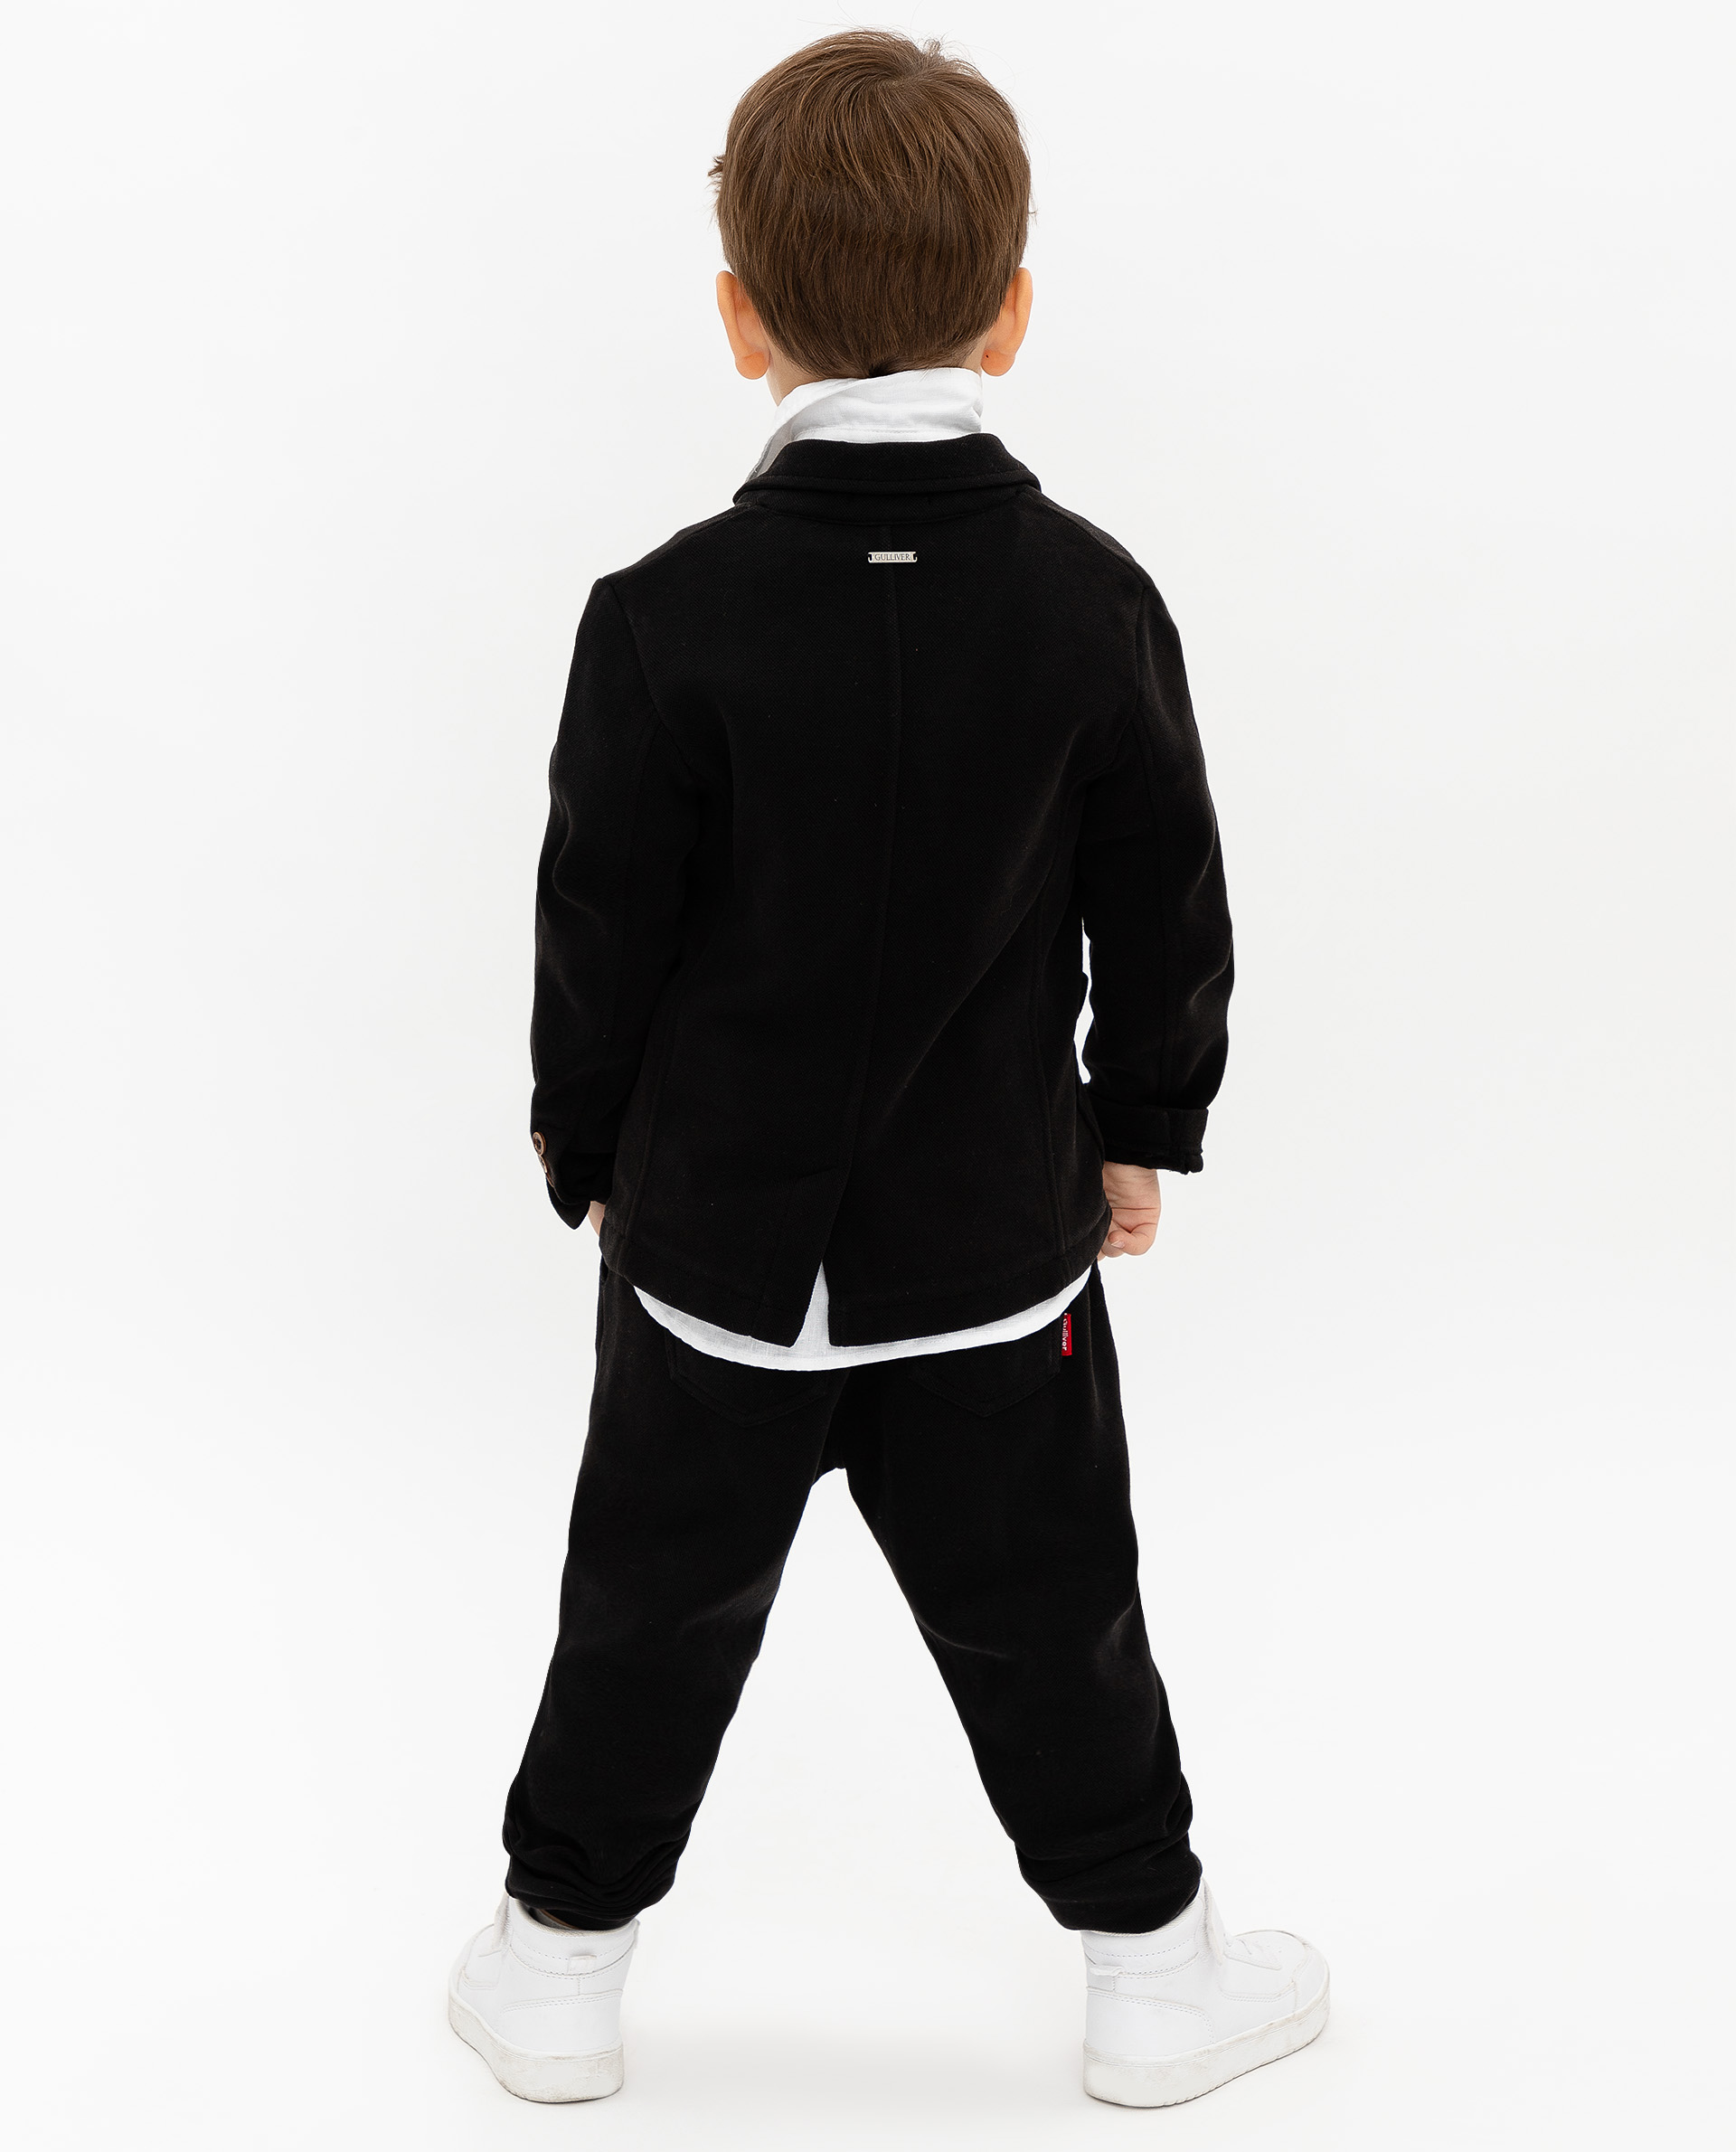 Черный пиджак Gulliver 12005BMC1902, размер 116 - фото 4